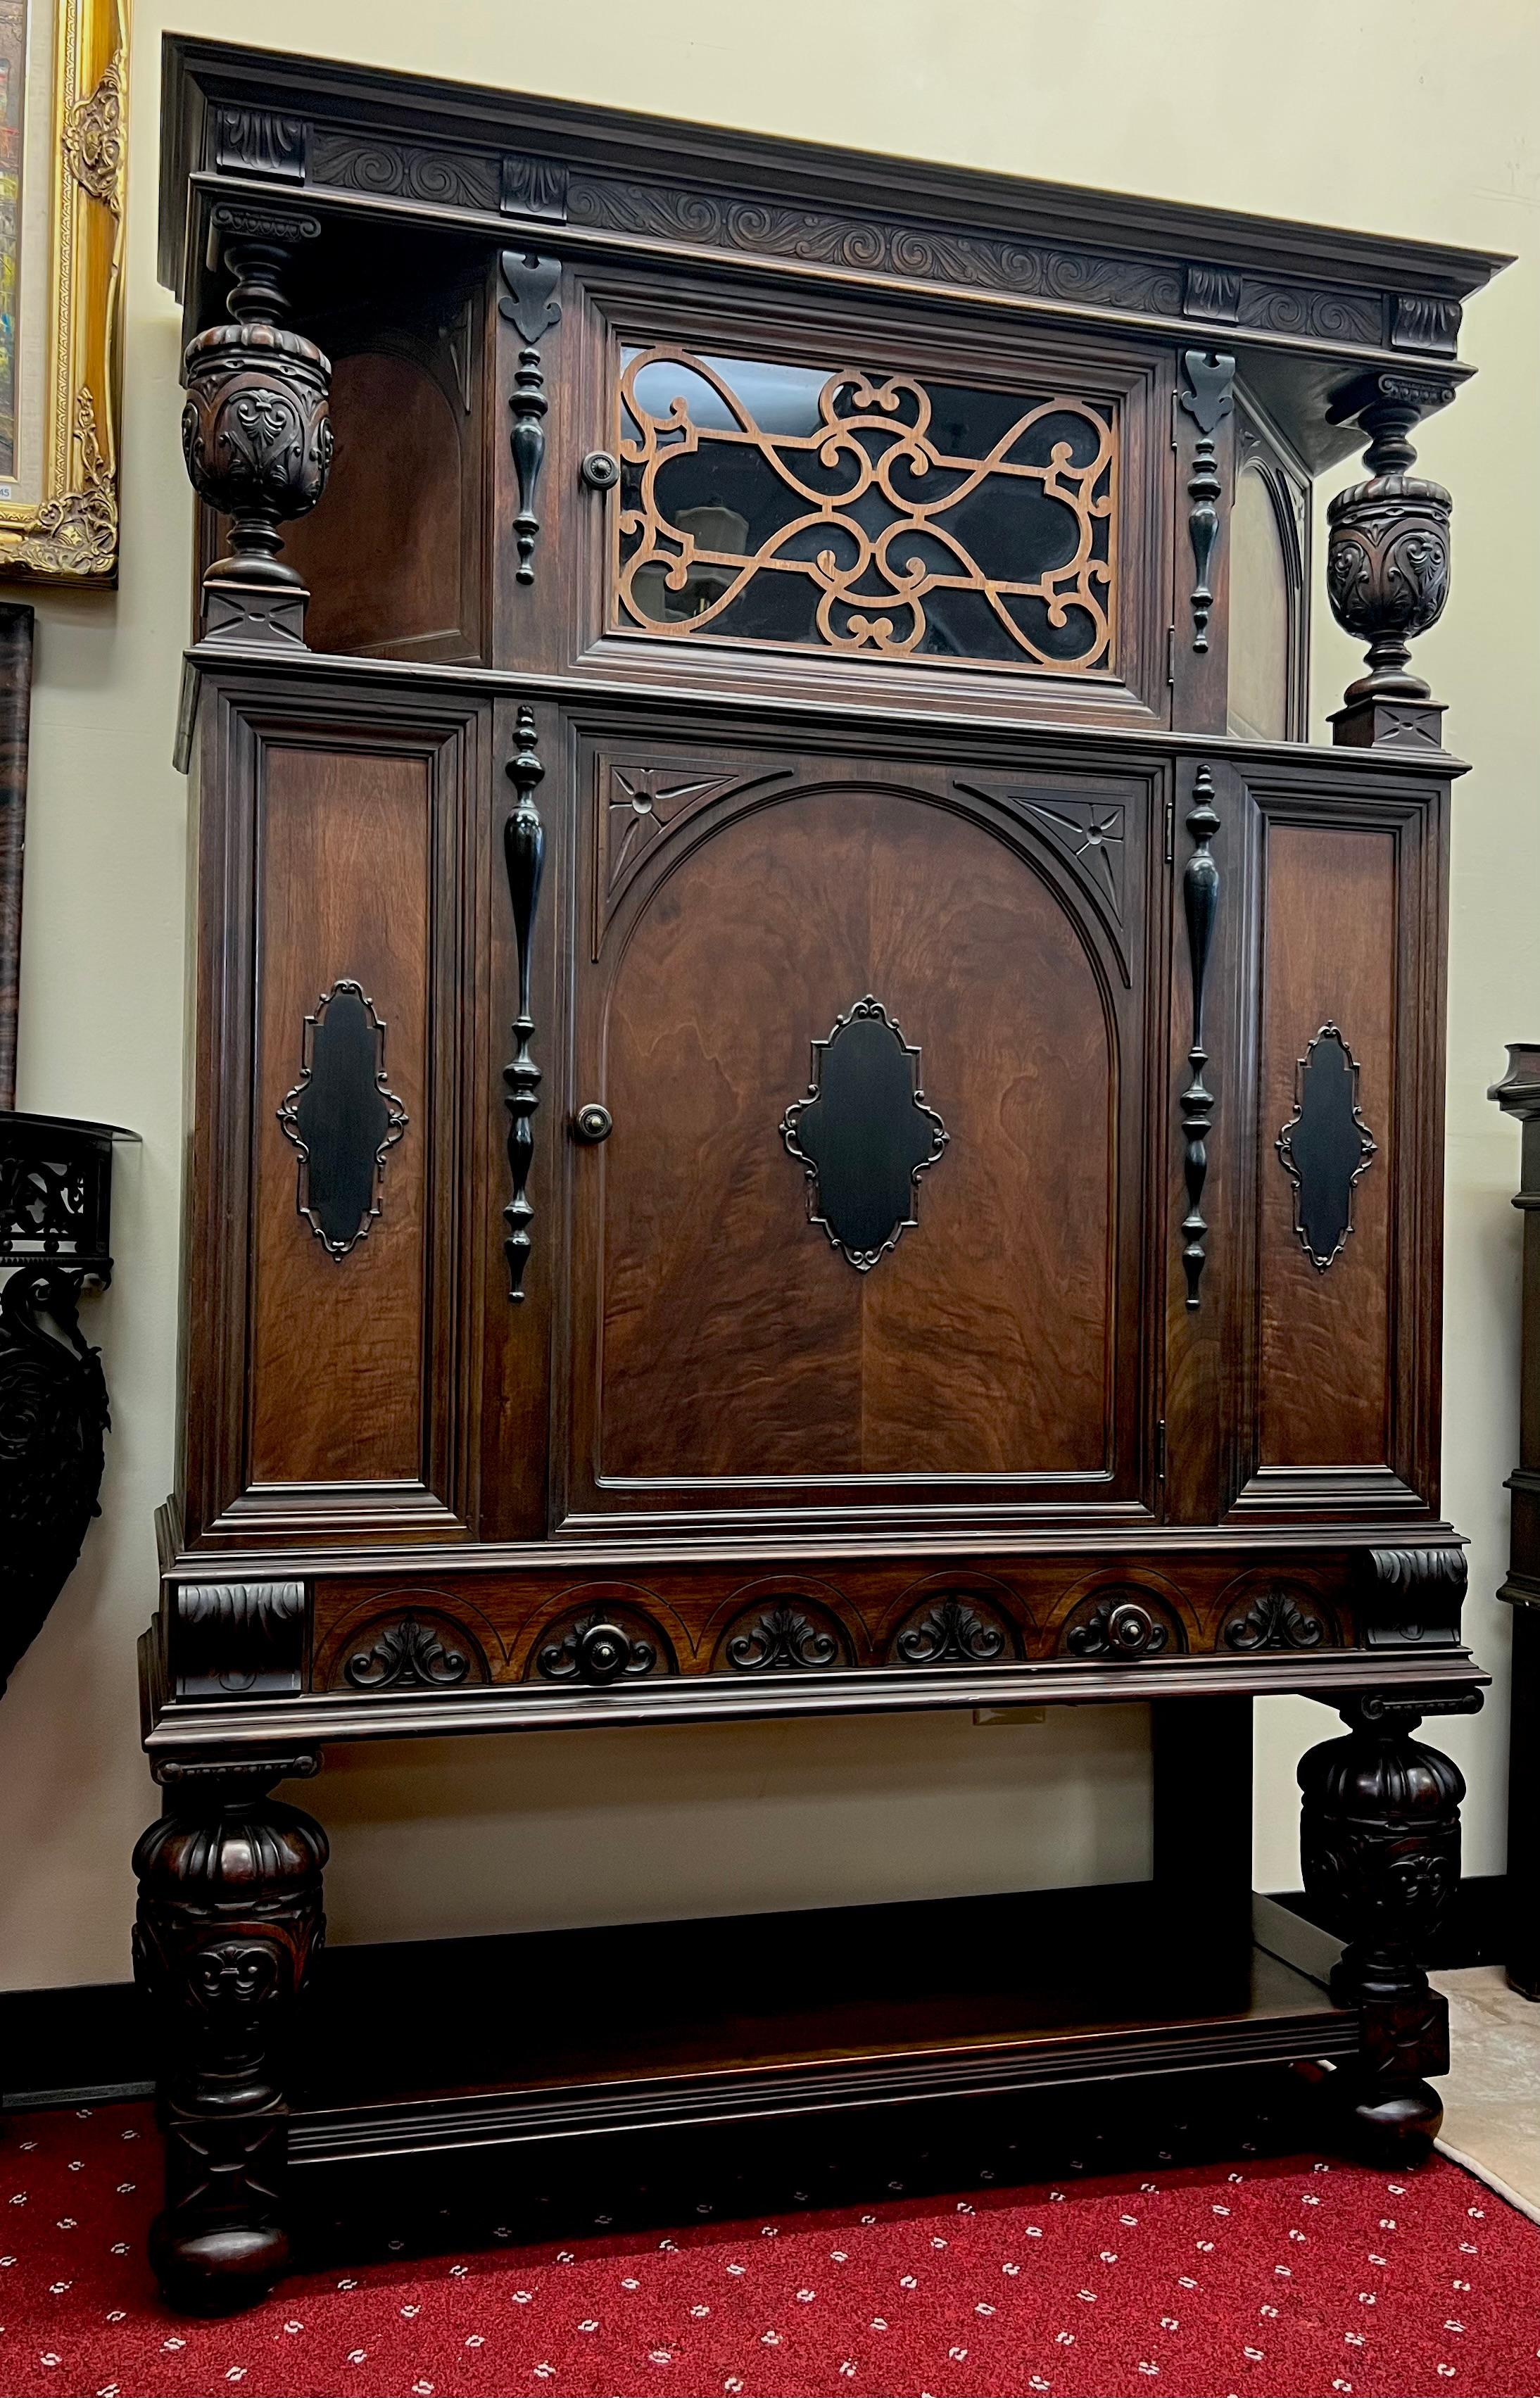 Ein Highboy im jakobinischen Stil, hergestellt von der renommierten Rockford Furniture Company. Das 1876 von schwedischen Siedlern gegründete Unternehmen blickt auf ein reiches Erbe an feiner Handwerkskunst und zeitlosem Design zurück.

Dieser